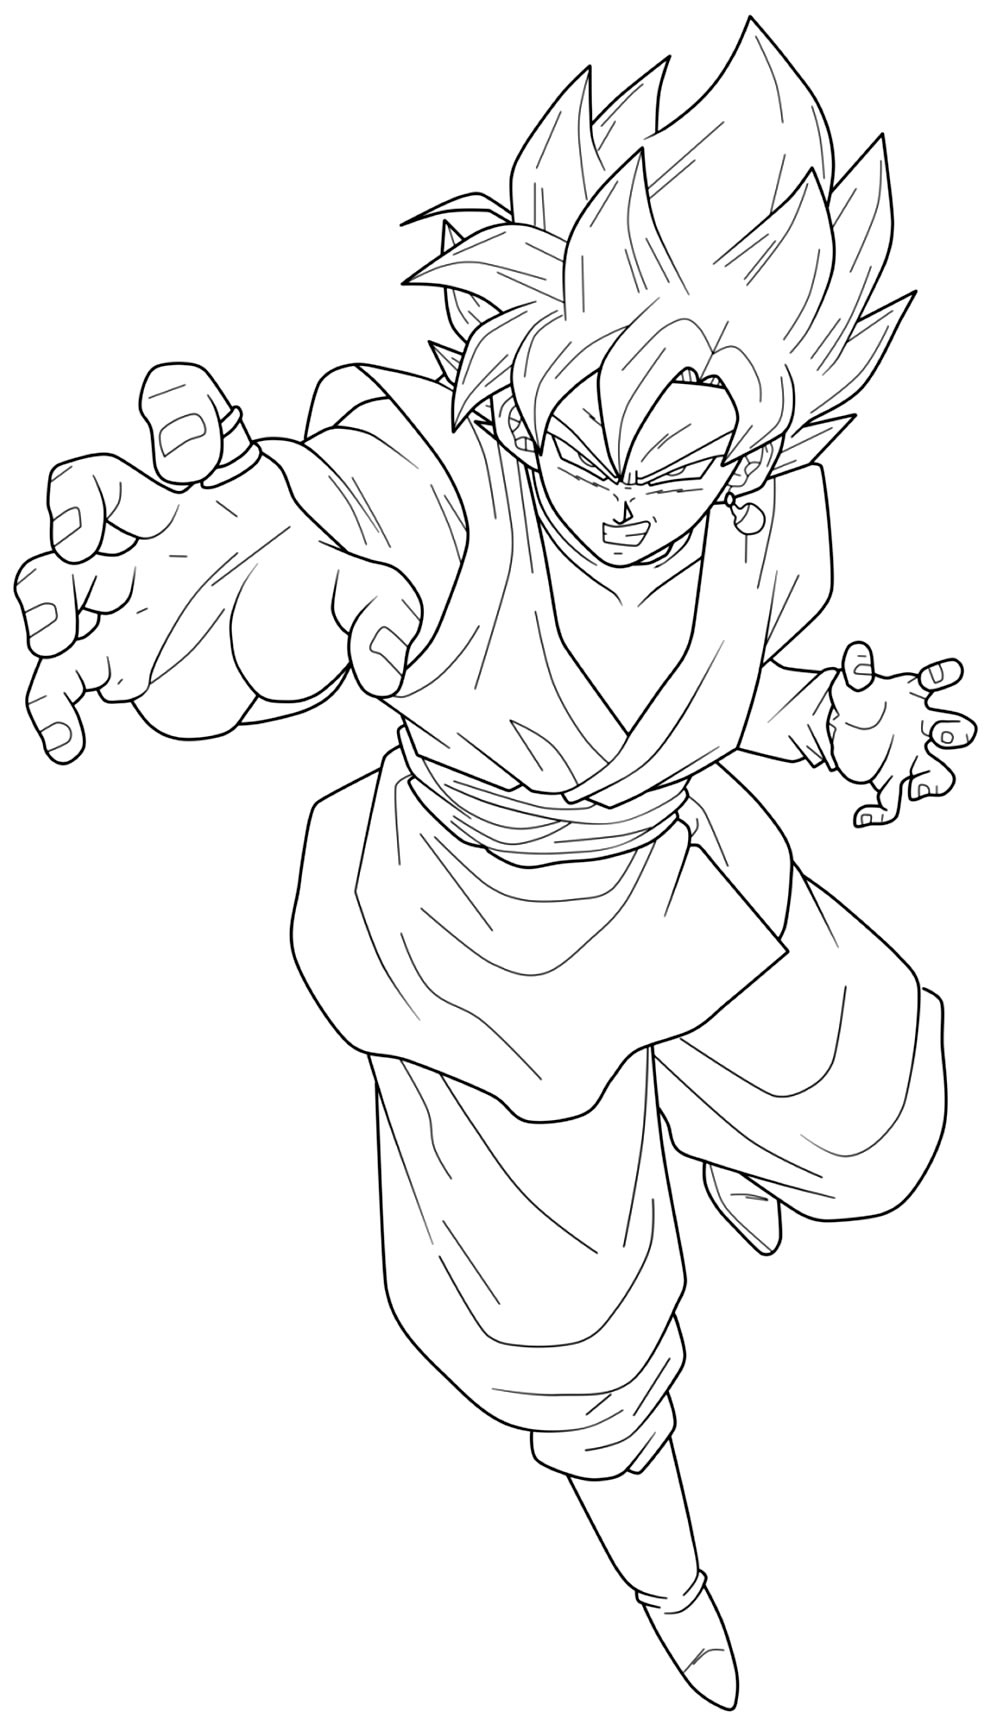 Goku desenhado e colorido 👍 feito - Desenhos/Iniciantes